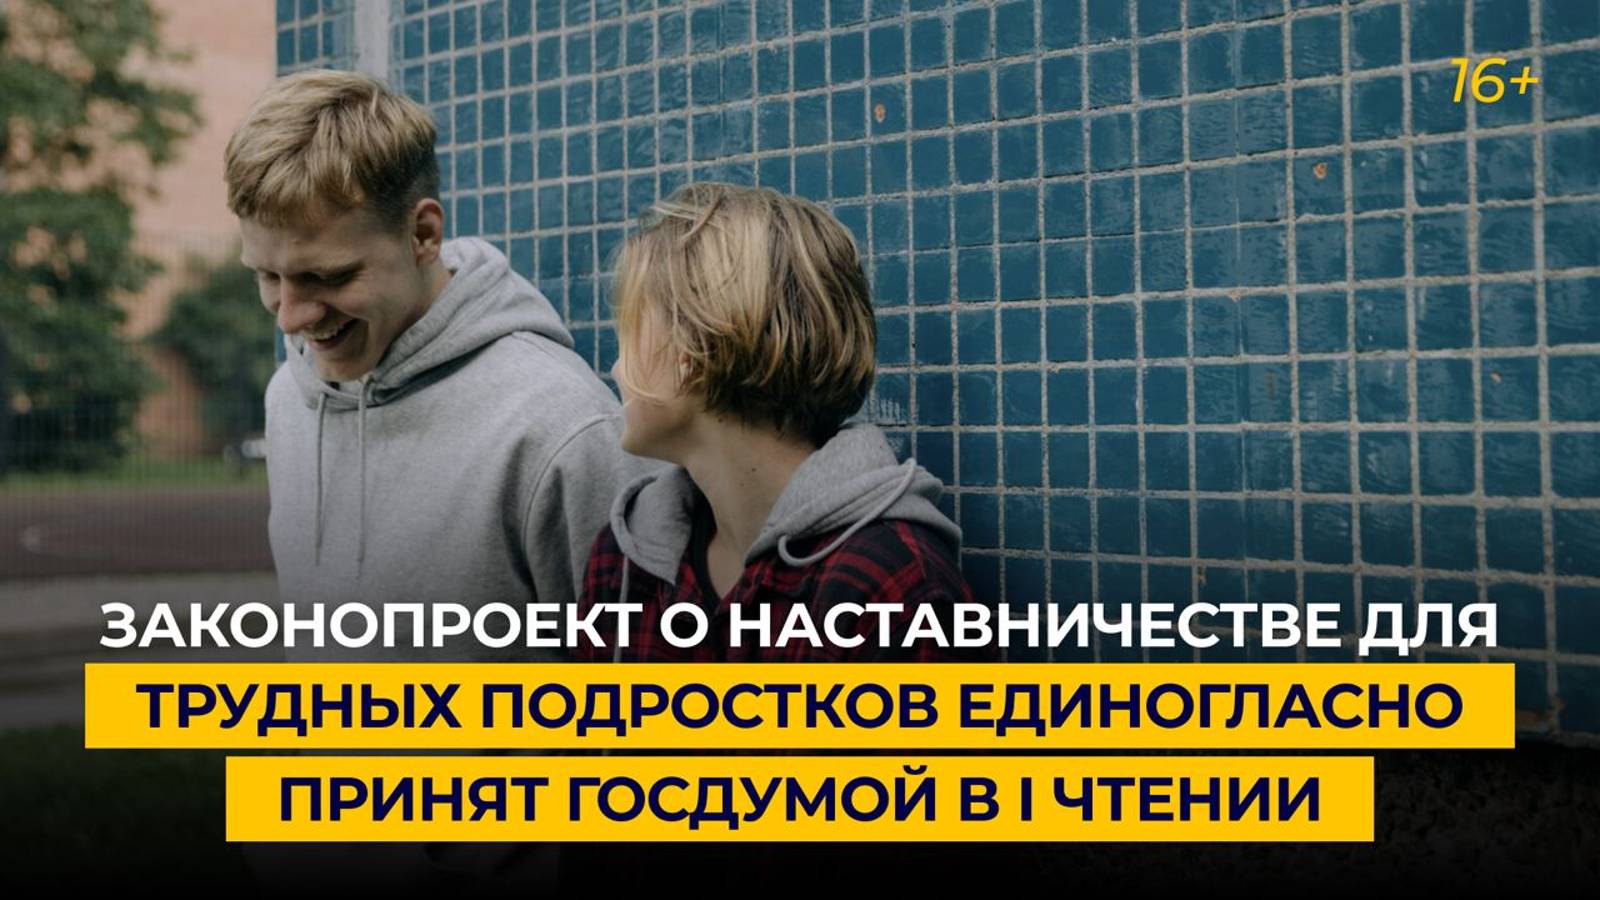 Законопроект о наставничестве для трудных подростков единогласно принят Госдумой в I чтении